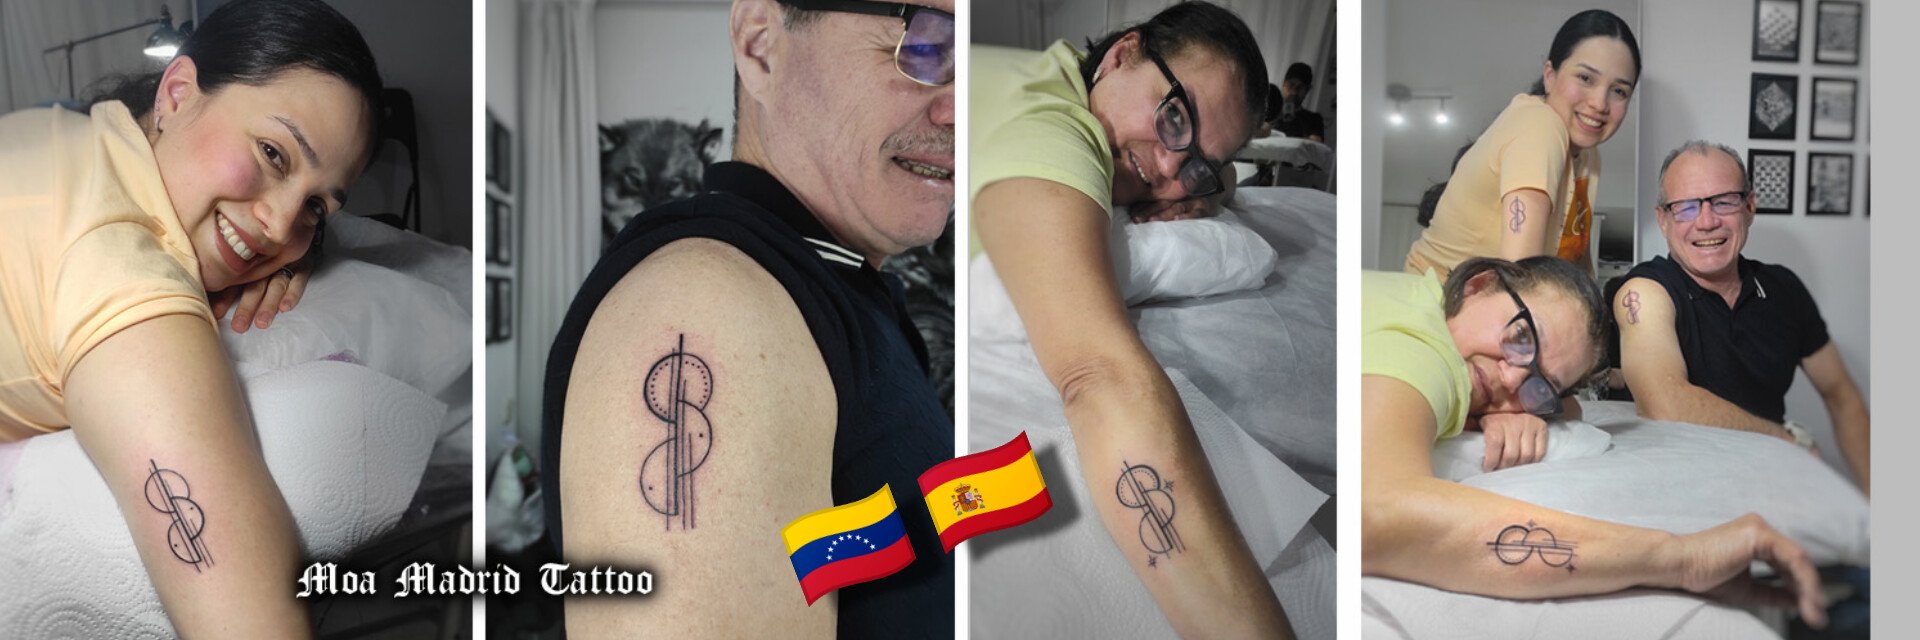 Novedades Moa Madrid Tattoo - Tatuajes de familia de Venezuala en Madrid